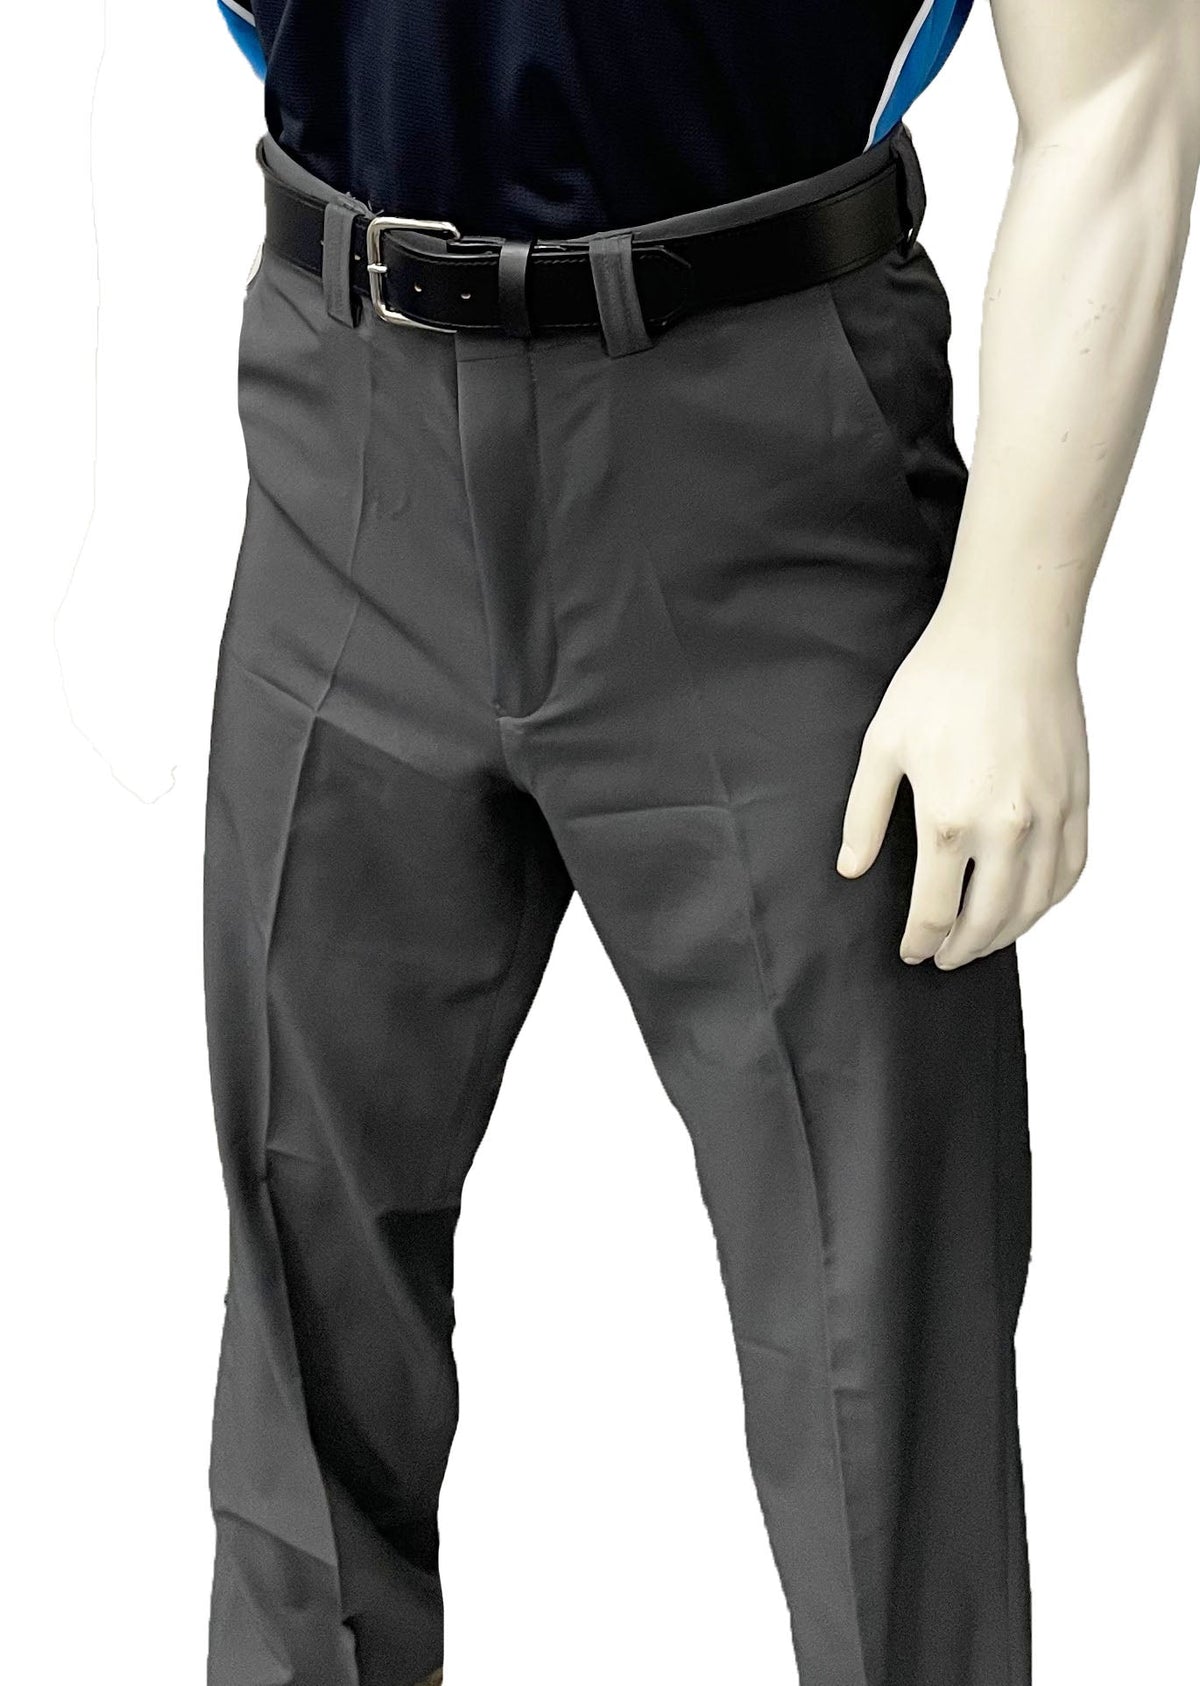 smitty | BBS-356 | Pantalones de árbitro de base plana y elásticos en 4 direcciones con cintura expansora | Gris carbón 